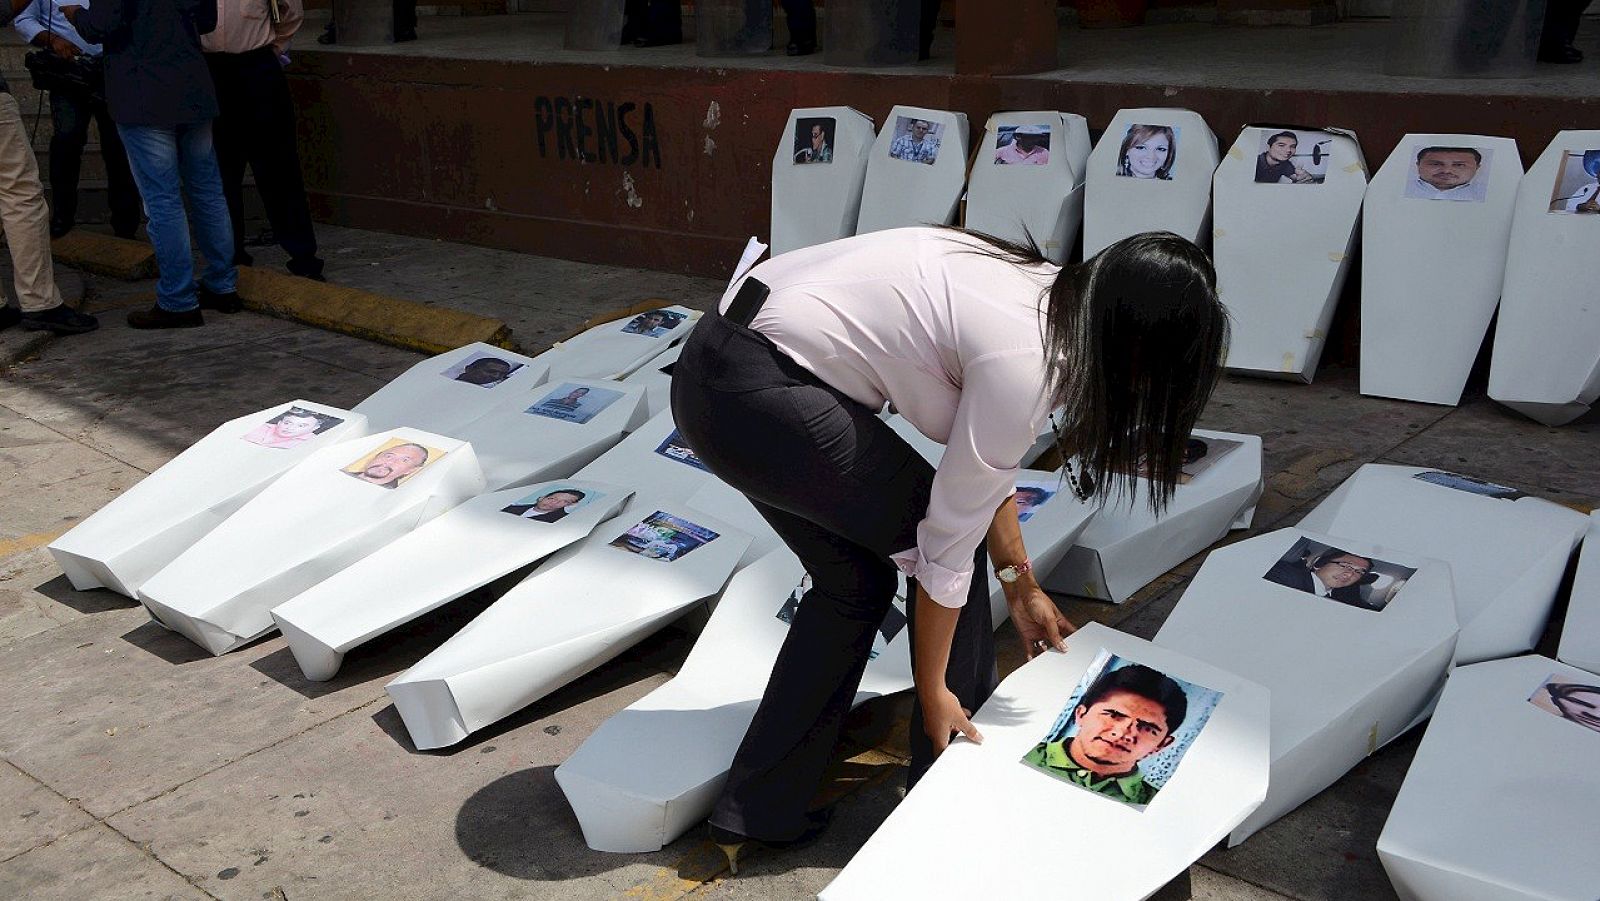 Ataúdes de cartón que representan a los periodistas asesinados en Honduras, durante una protesta en Tegucigalpa, el 11 de abril de 2016. 52 informadores han sido asesinados en el país en los últimos seis años. AFP PHOTO / ORLANDO SIERRA